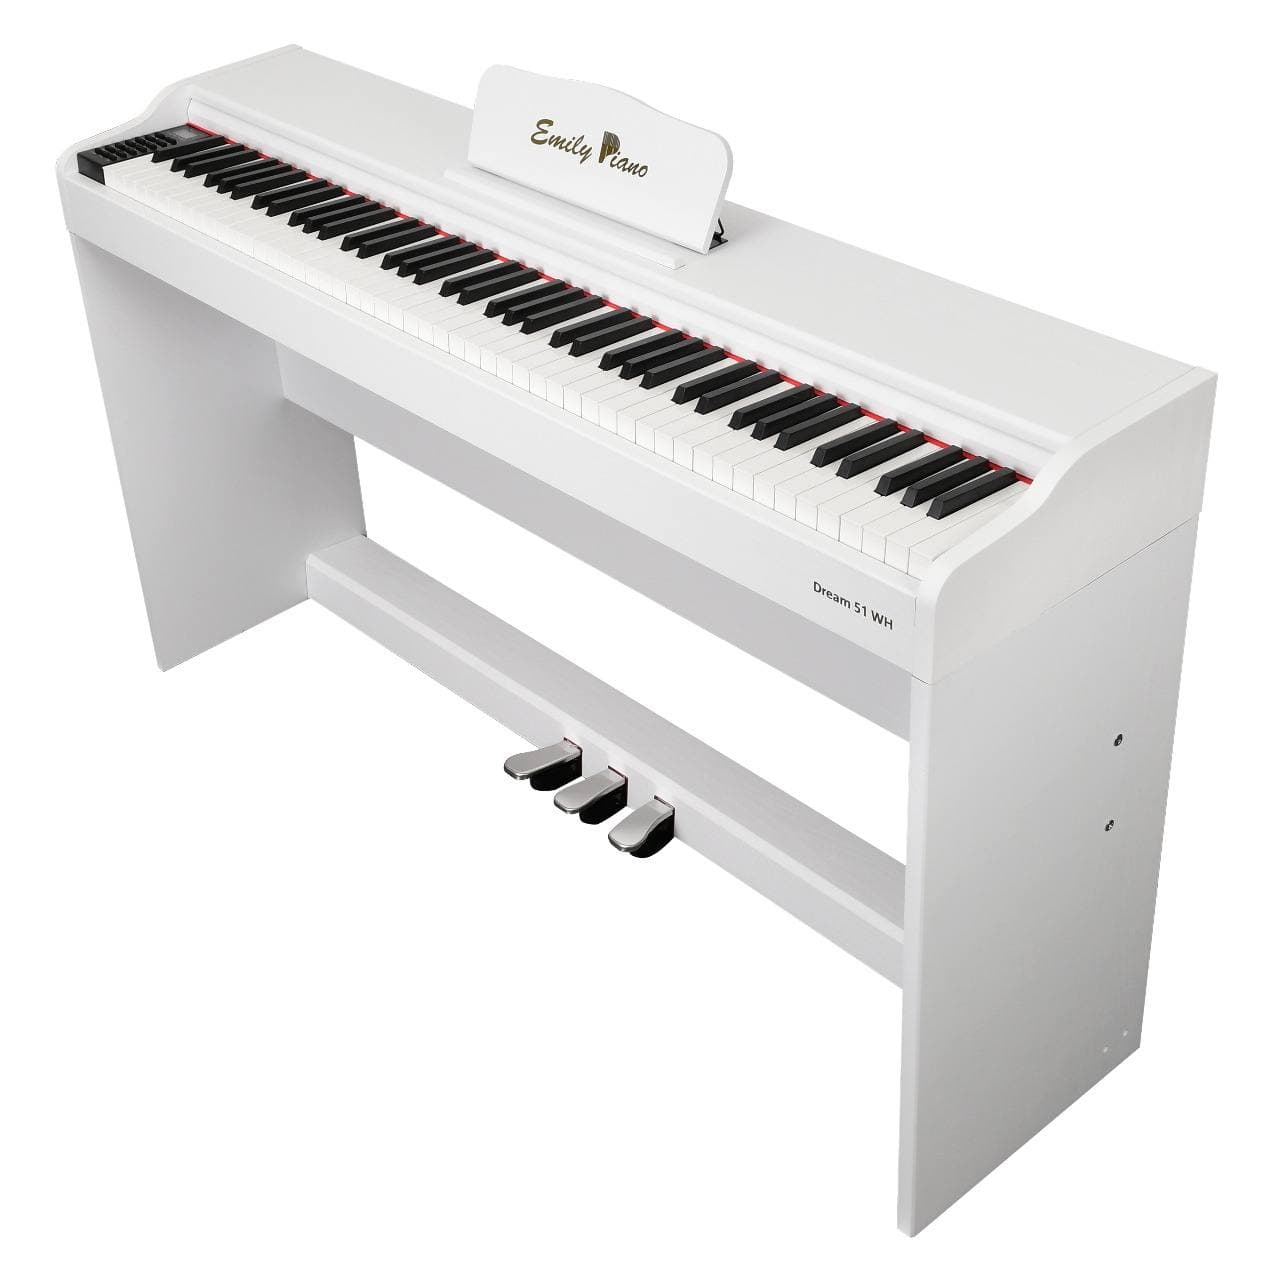 Цифровое фортепиано со стойкой в комплекте EMILY PIANO D-51 WH